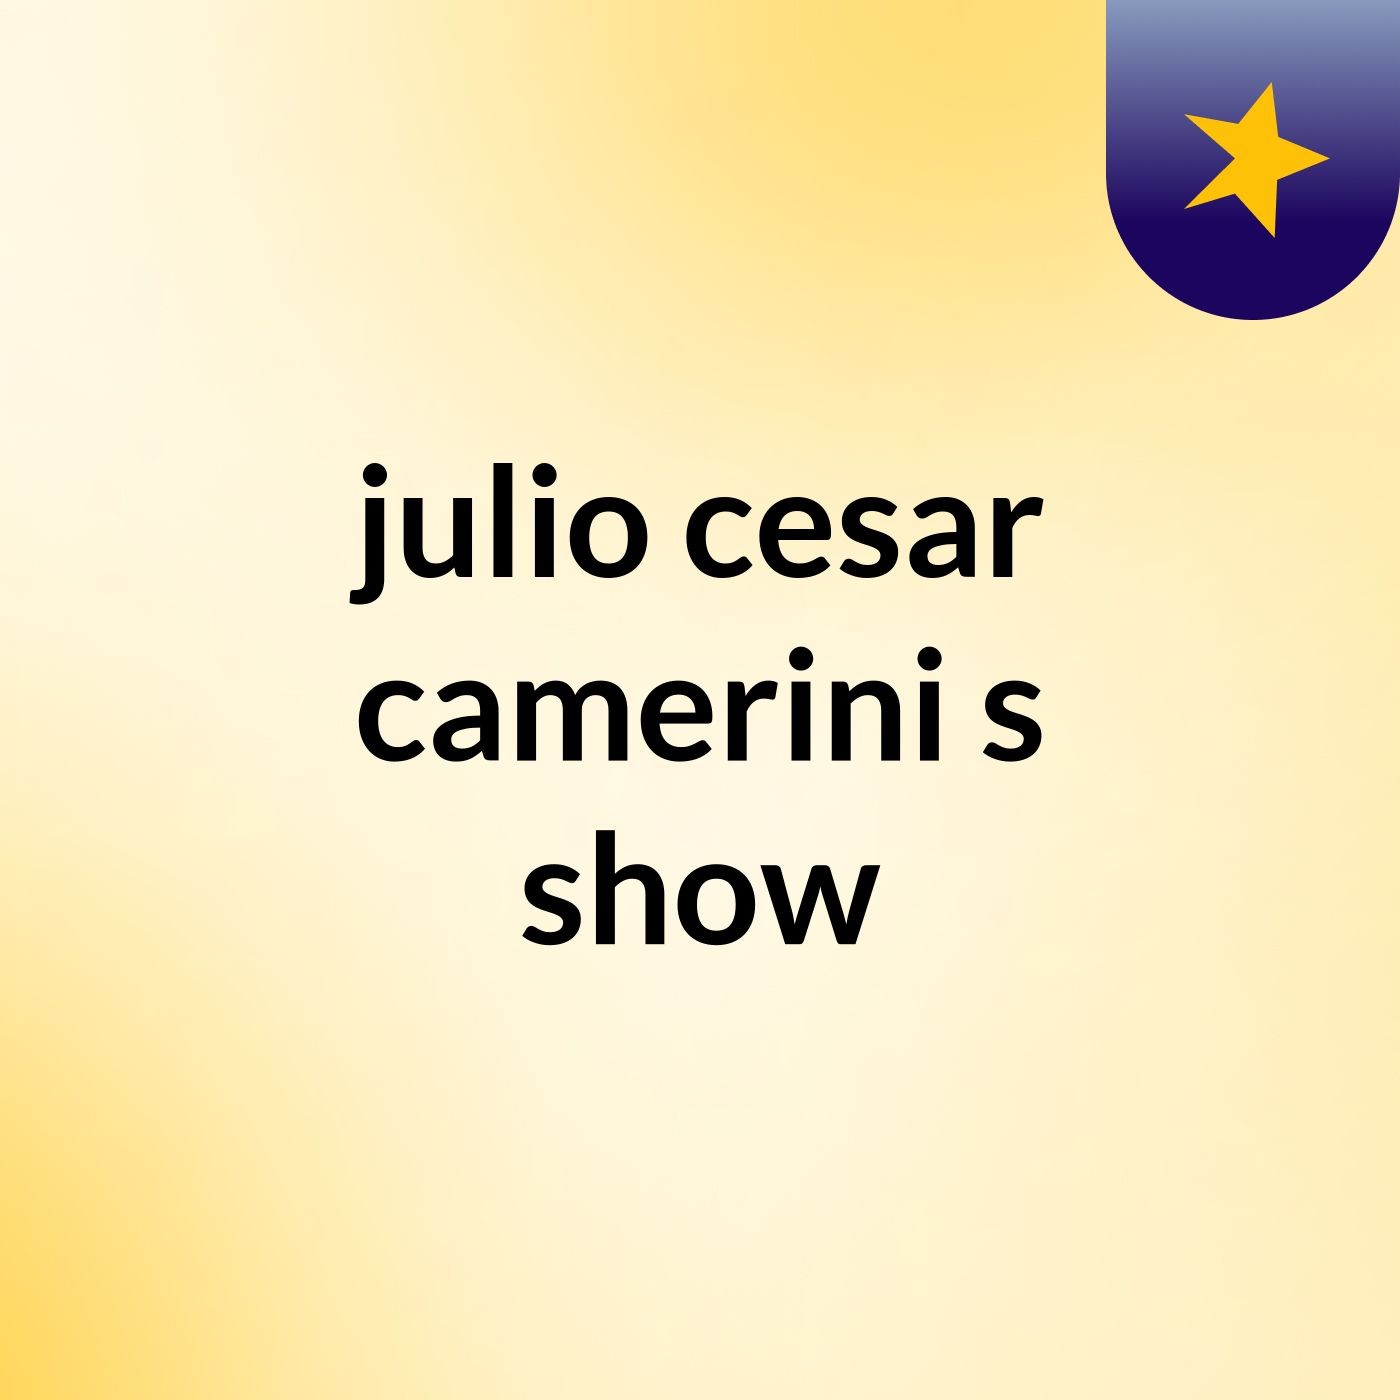 julio cesar camerini's show